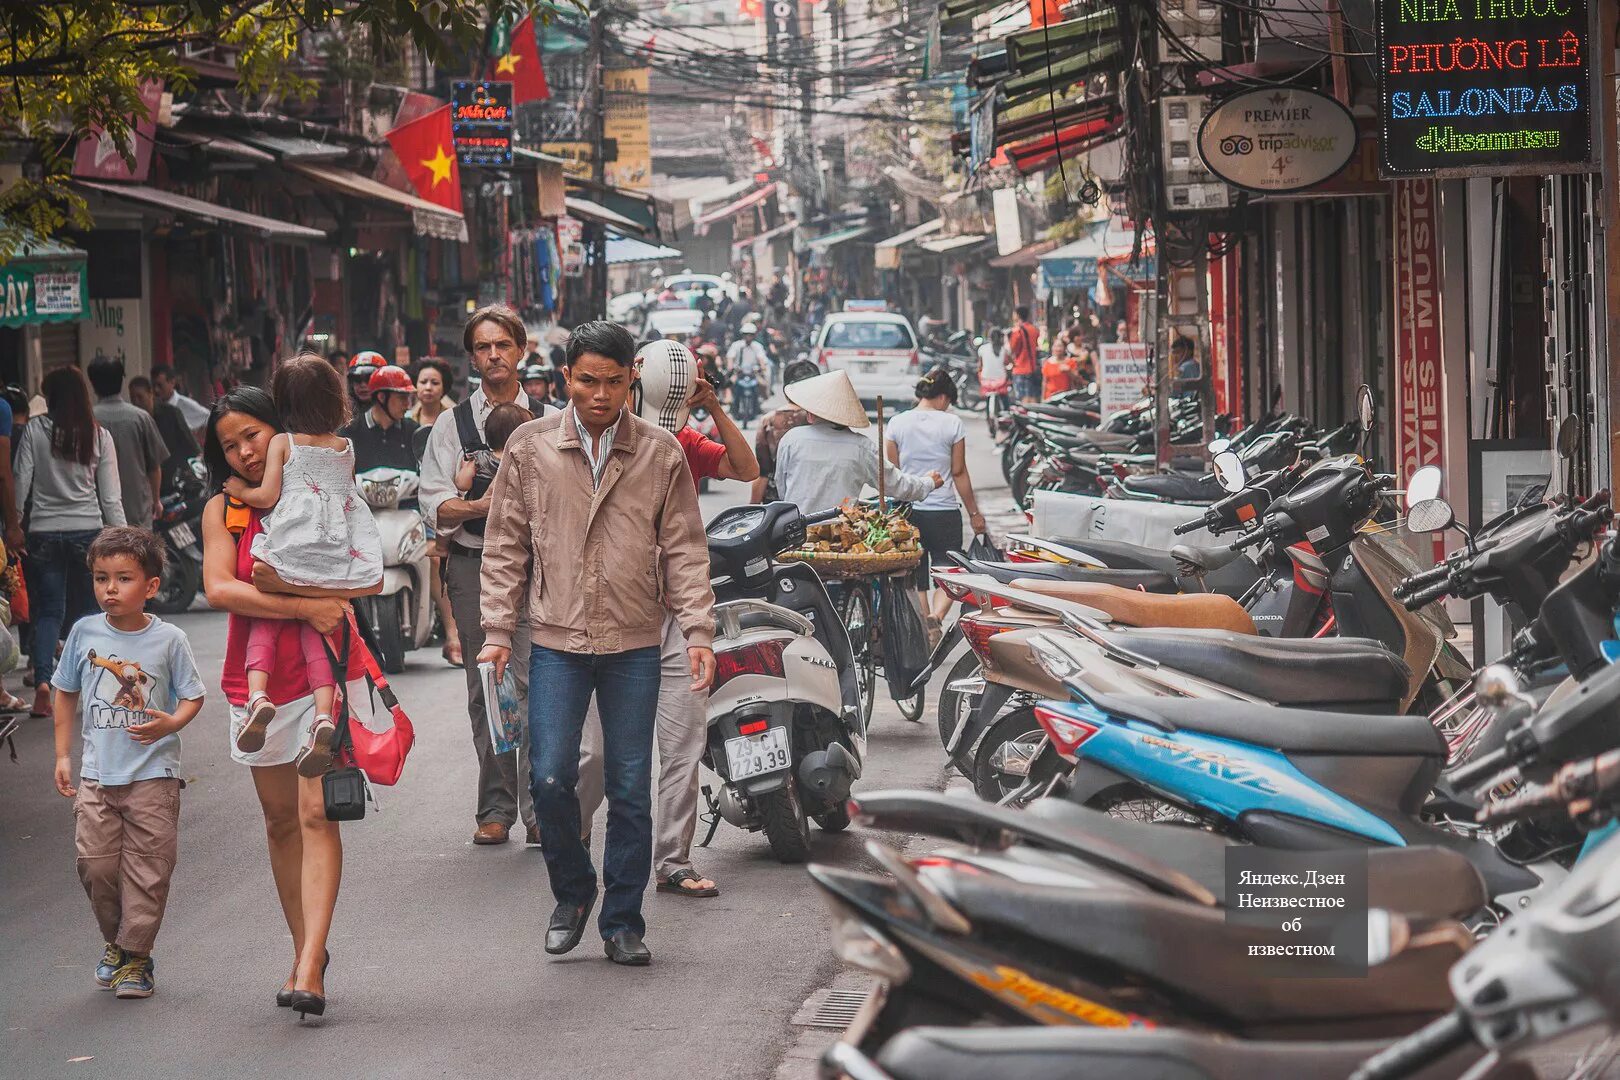 Вьетнам Ханой население. Ханой Вьетнам численность населения. Вьетнам люди на улицах. Вьетнам улицы.